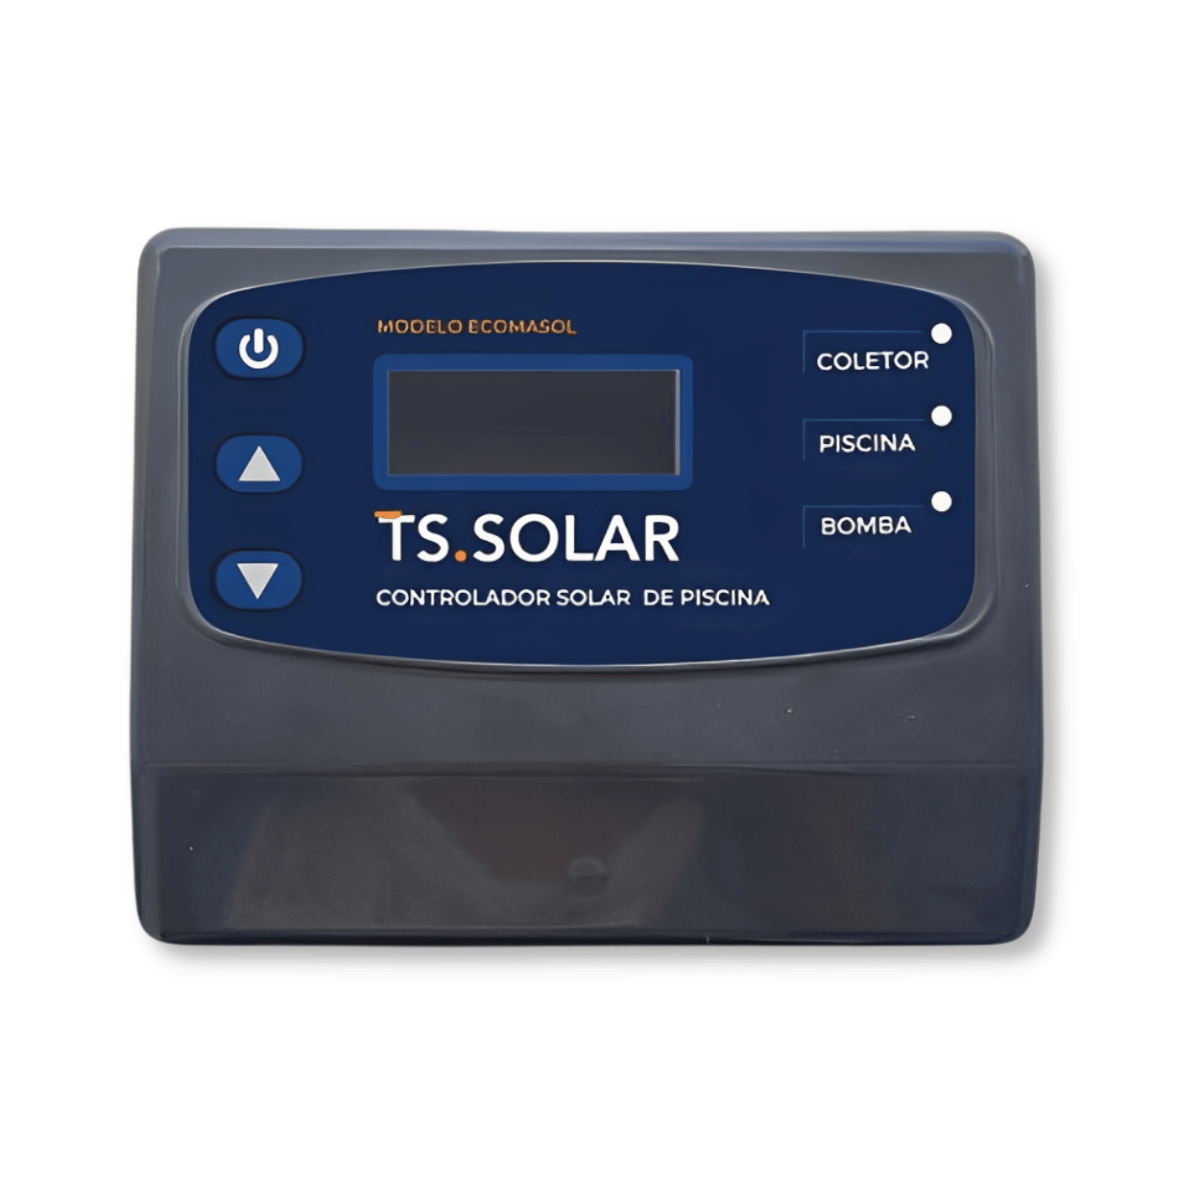 CDT Controlador Digital de Temperatura ECOMASOL V2 - TS Solar (smart model)